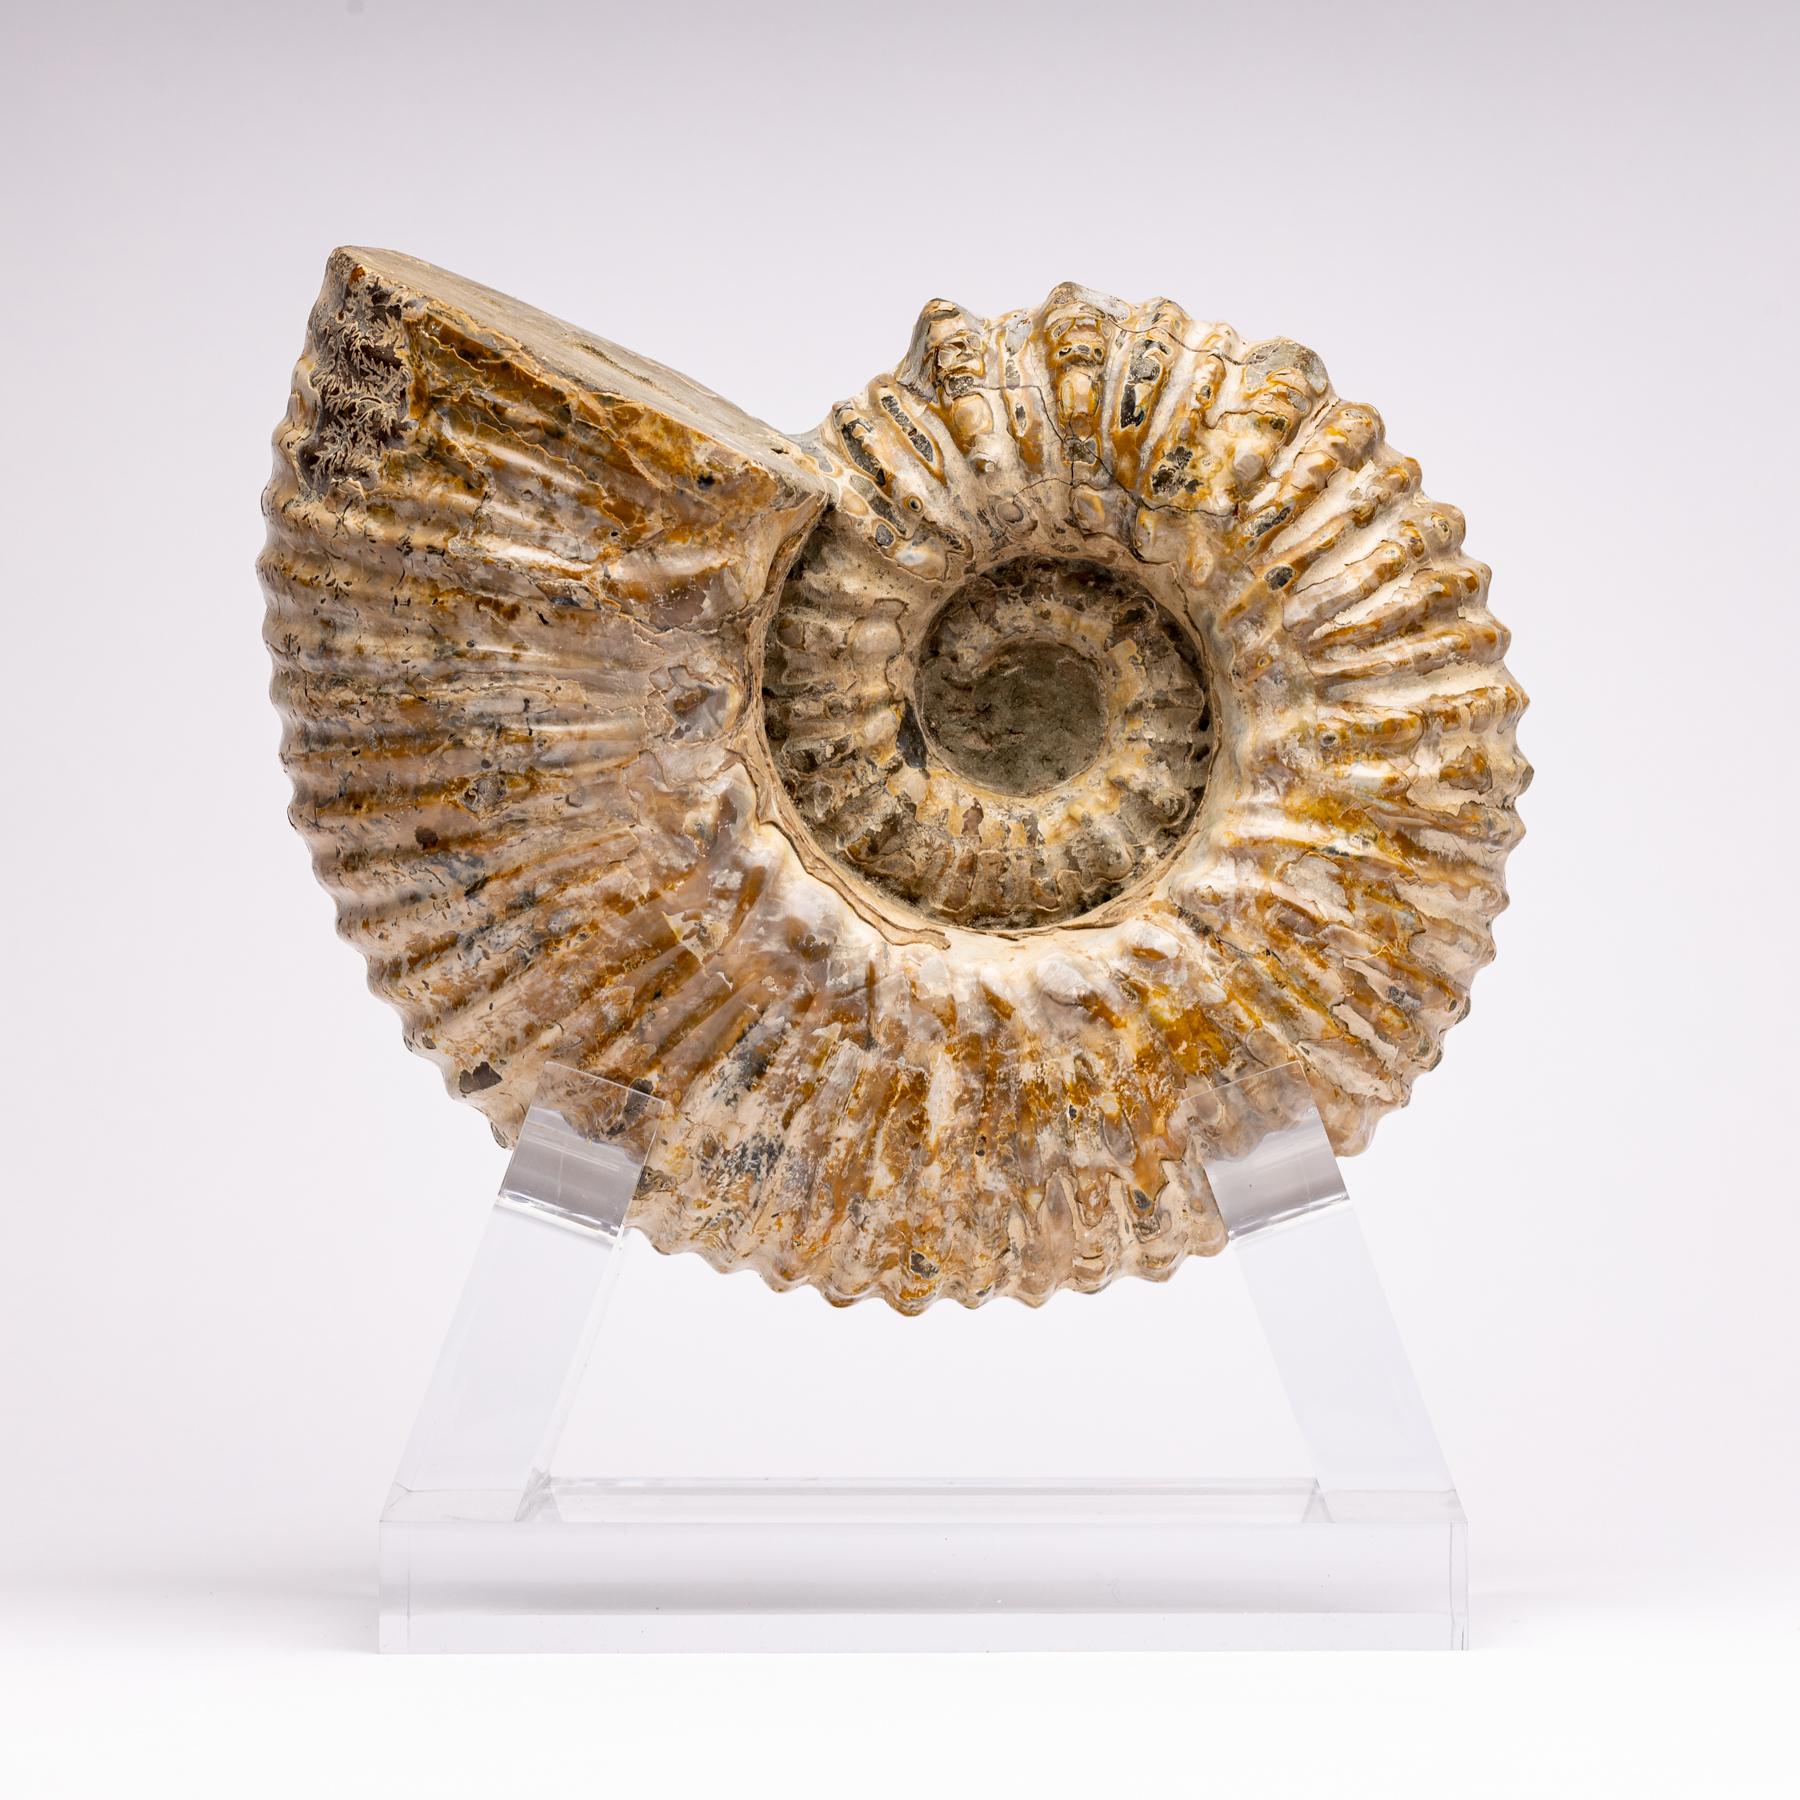 ammonite douvilleiceras